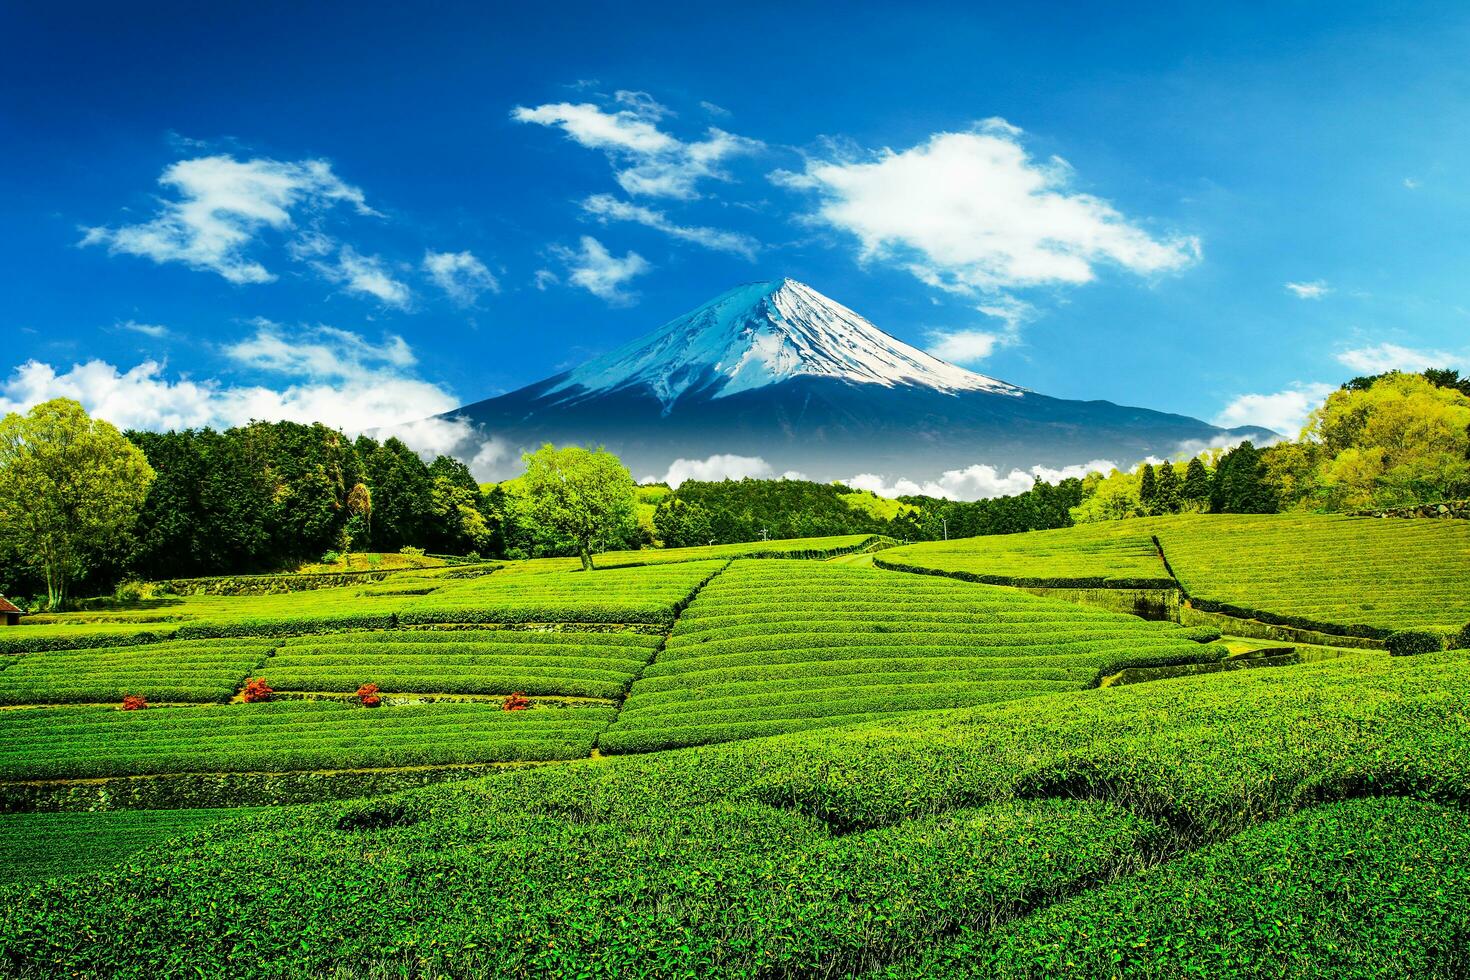 thé plantation sur le retour surplombant monter Fuji avec clair ciel dans Shizuoka, obuchi sasaba, Japon photo